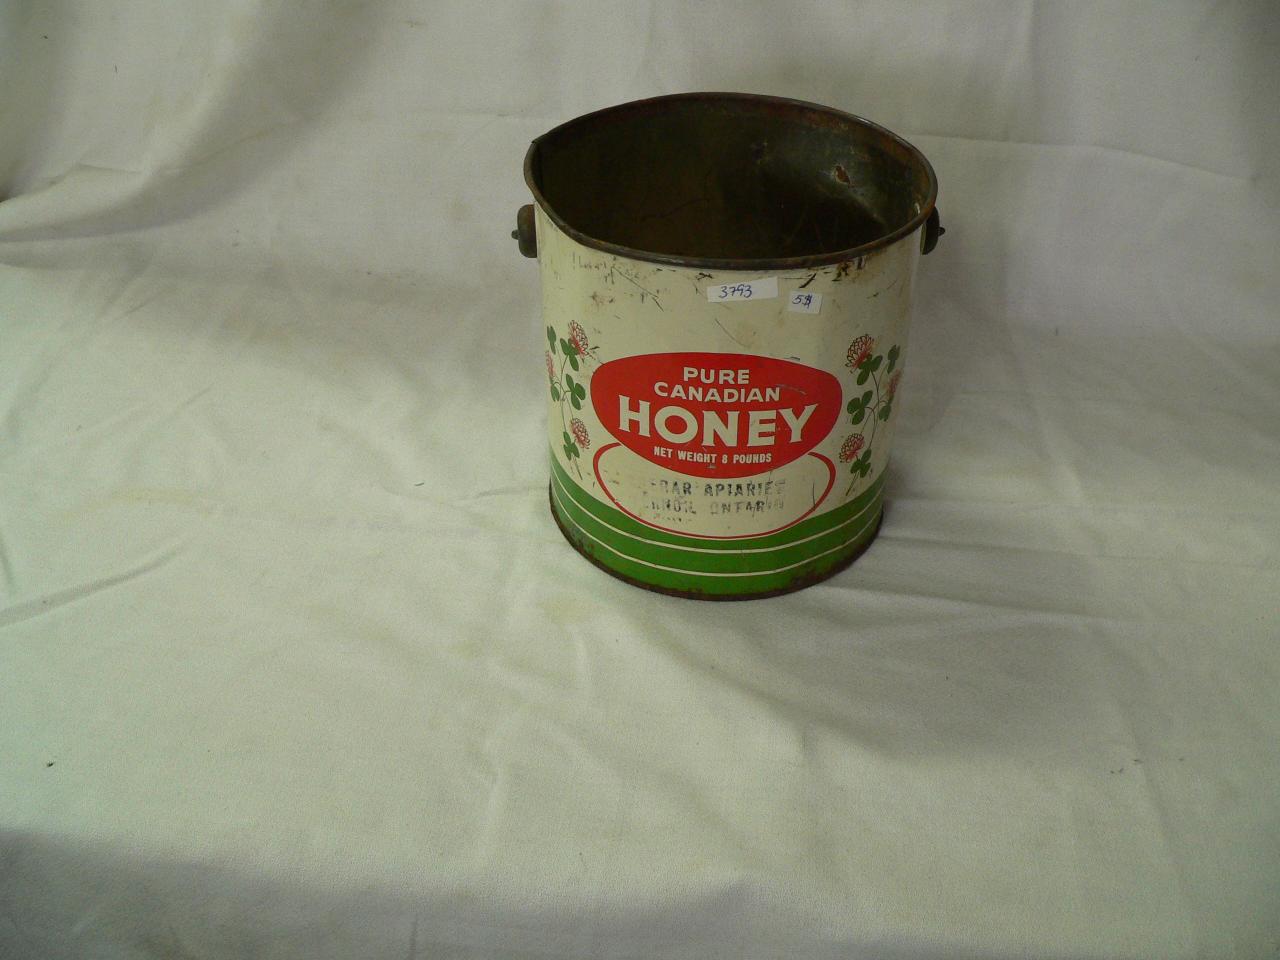 Canne antique de miel canadien # 3793